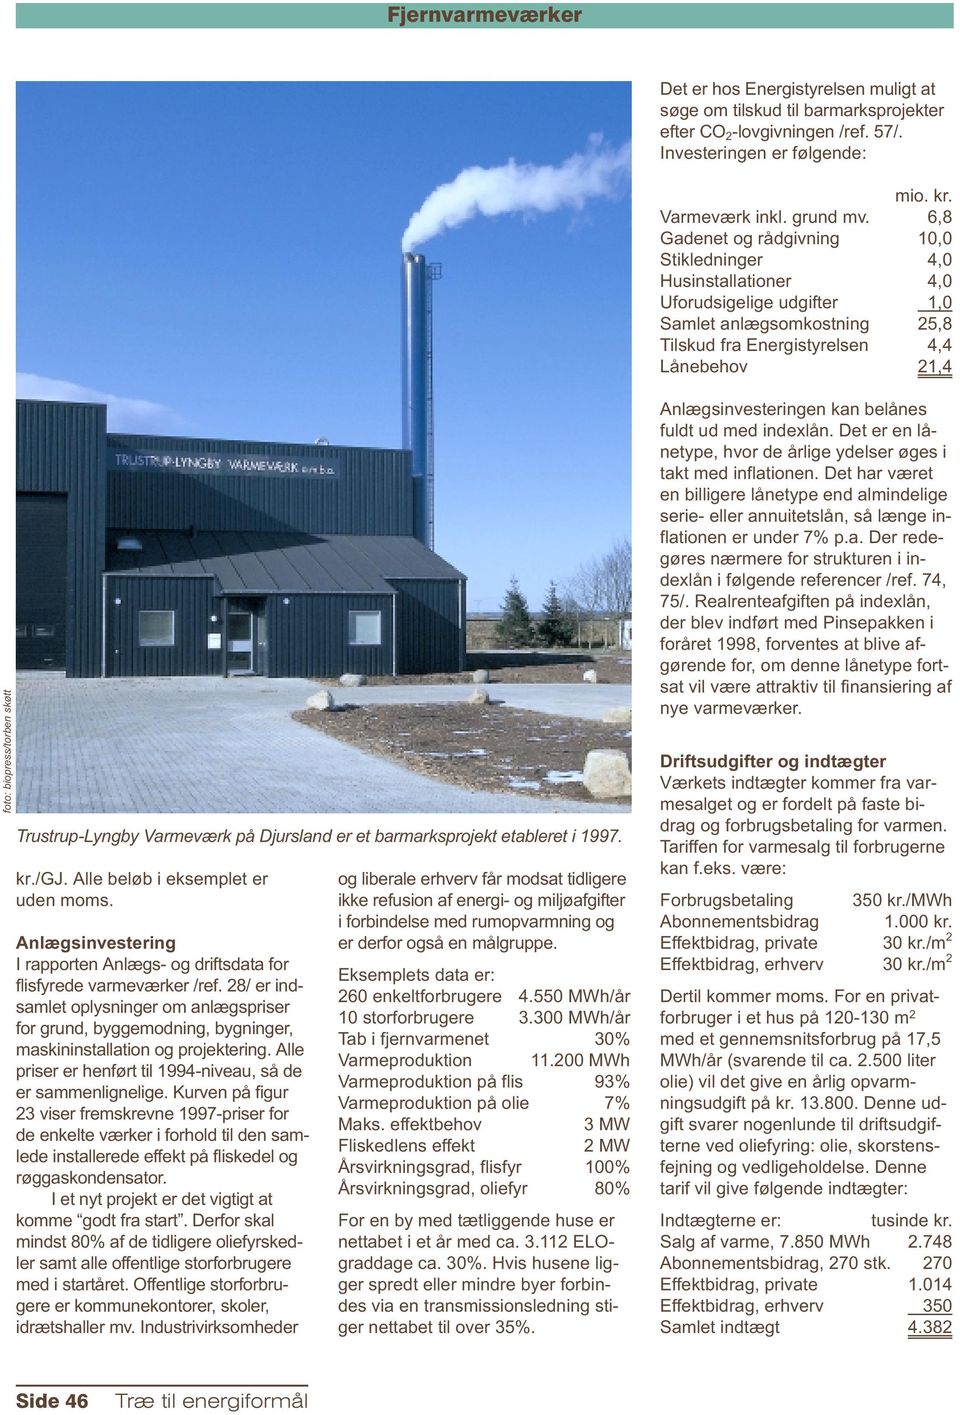 skøtt Trustrup-Lyngby Varmeværk på Djursland er et barmarksprojekt etableret i 1997. kr./gj. Alle beløb i eksemplet er uden moms.